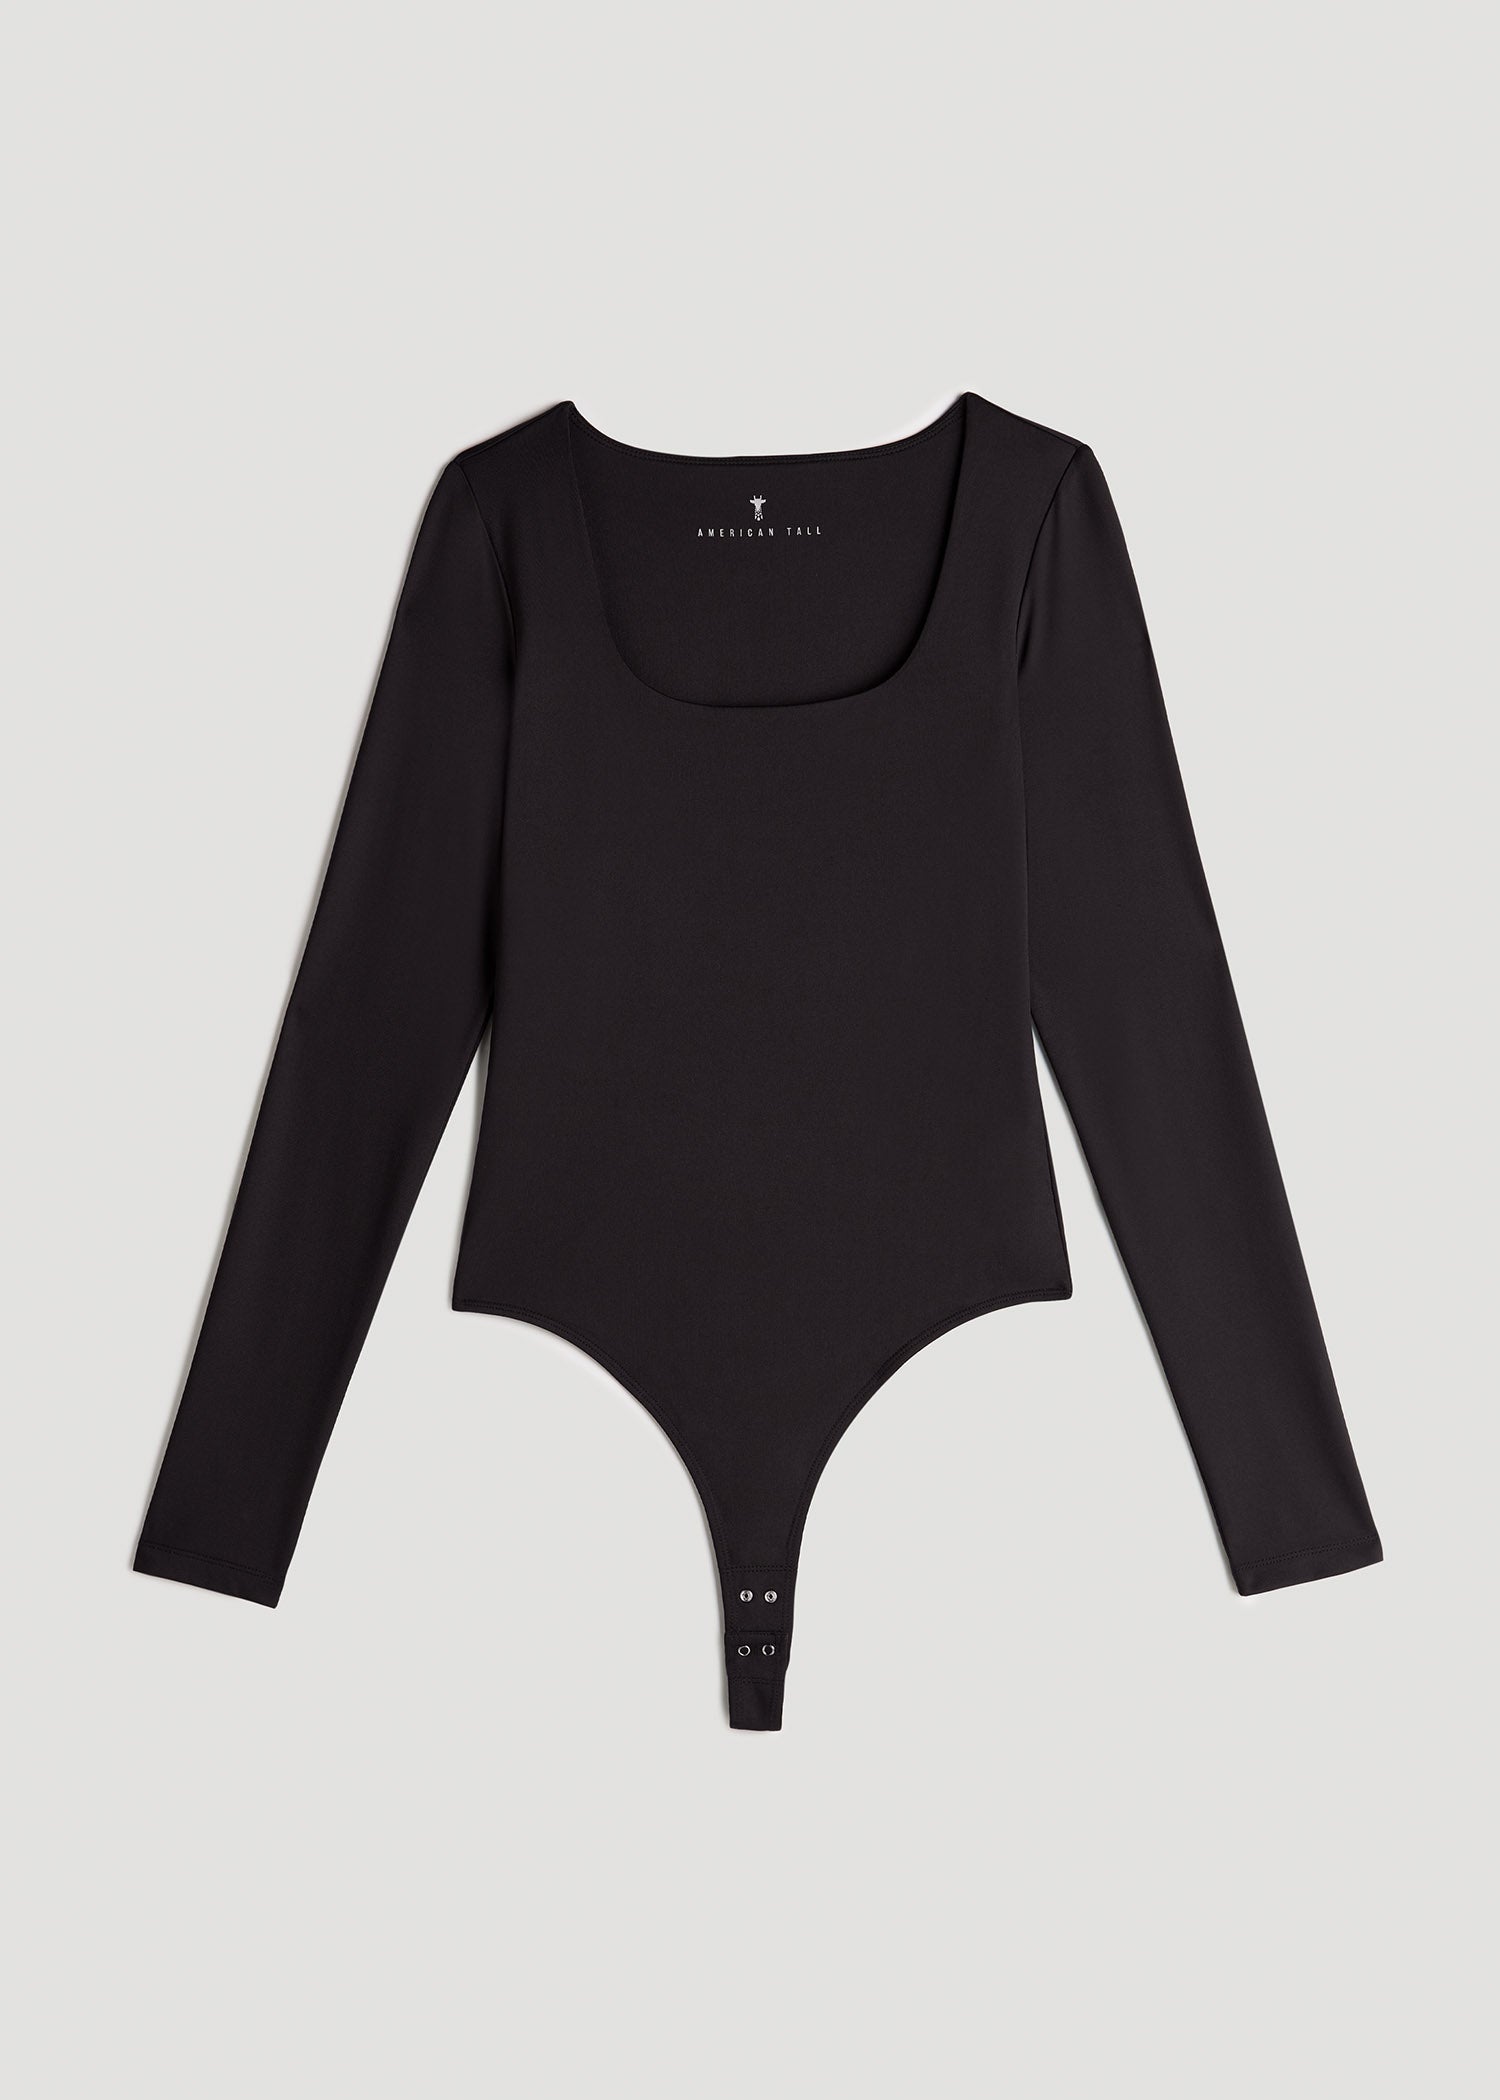  GORGLITTER Women's Square Neck Long Sleeve Bodysuit